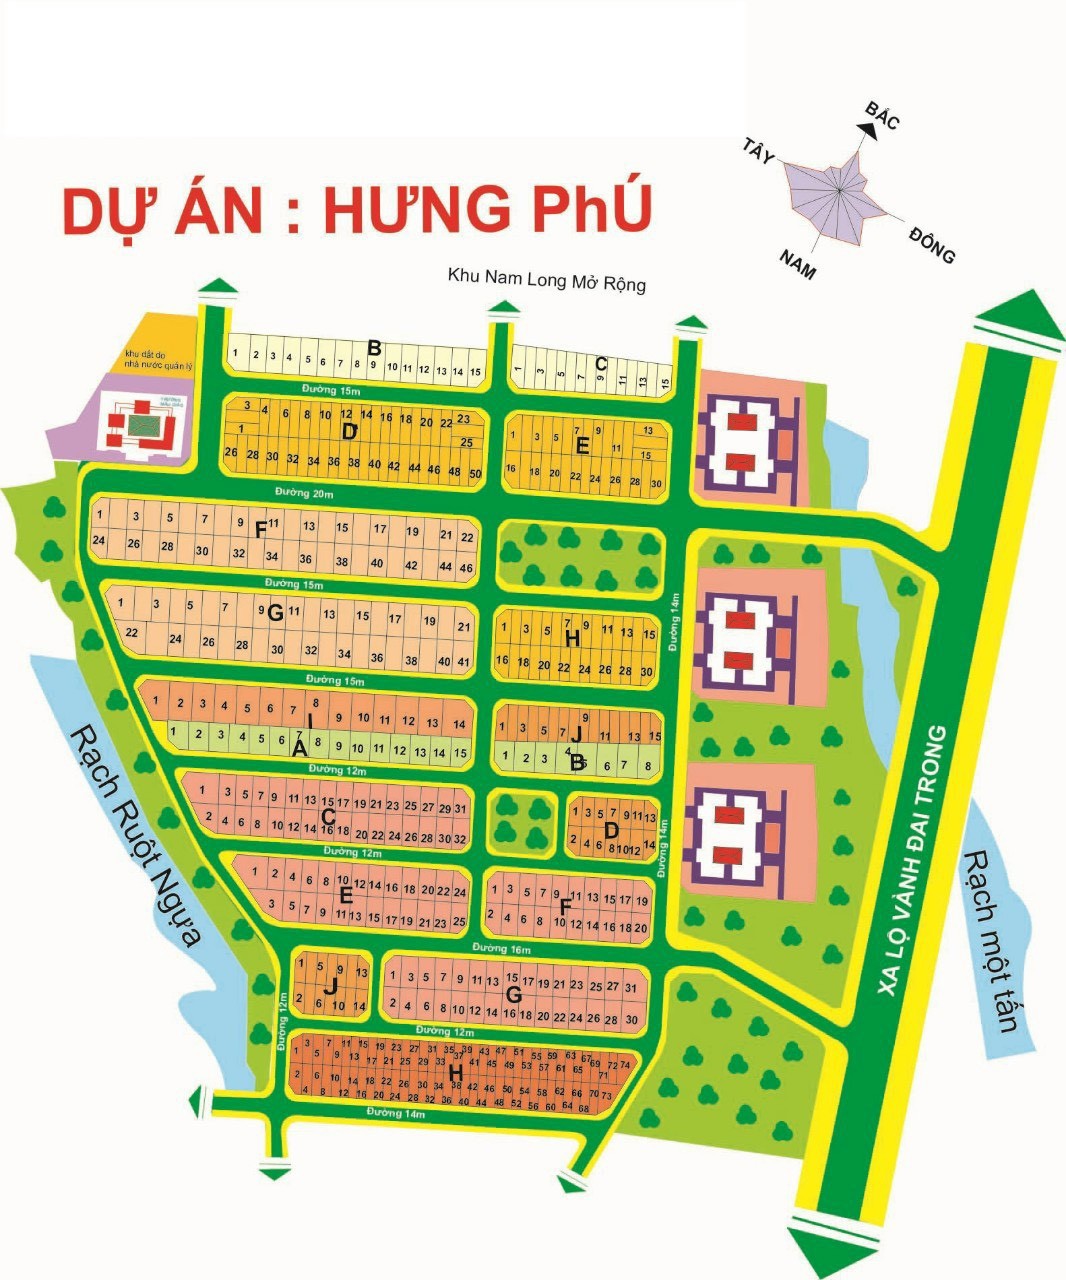 Chuyên dịch vụ kí gửi bán nhanh các lô đất tại KDC Hưng Phú, bảm đảm ra hàng nhanh giá canh tranh.